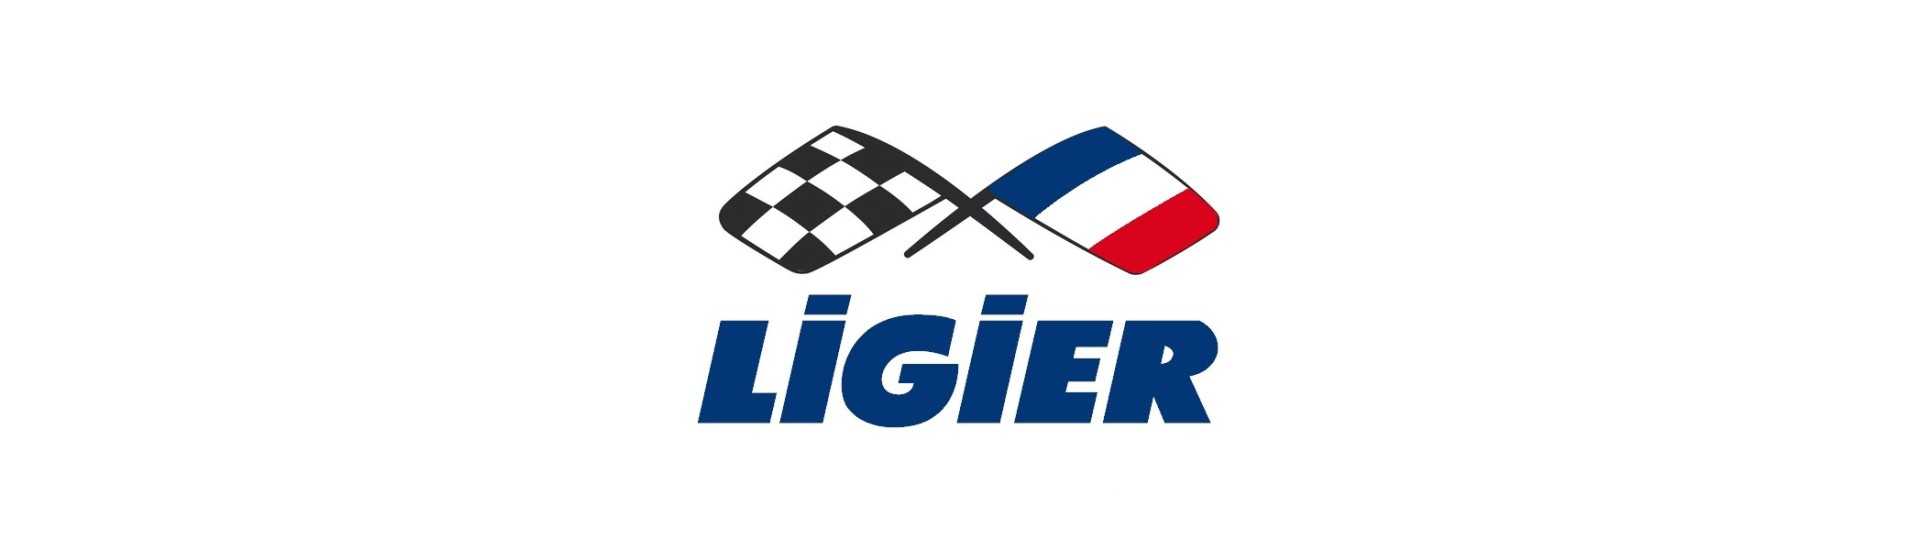 Accelerator-Kabel zum besten Preis für Auto ohne Lizenz Ligier